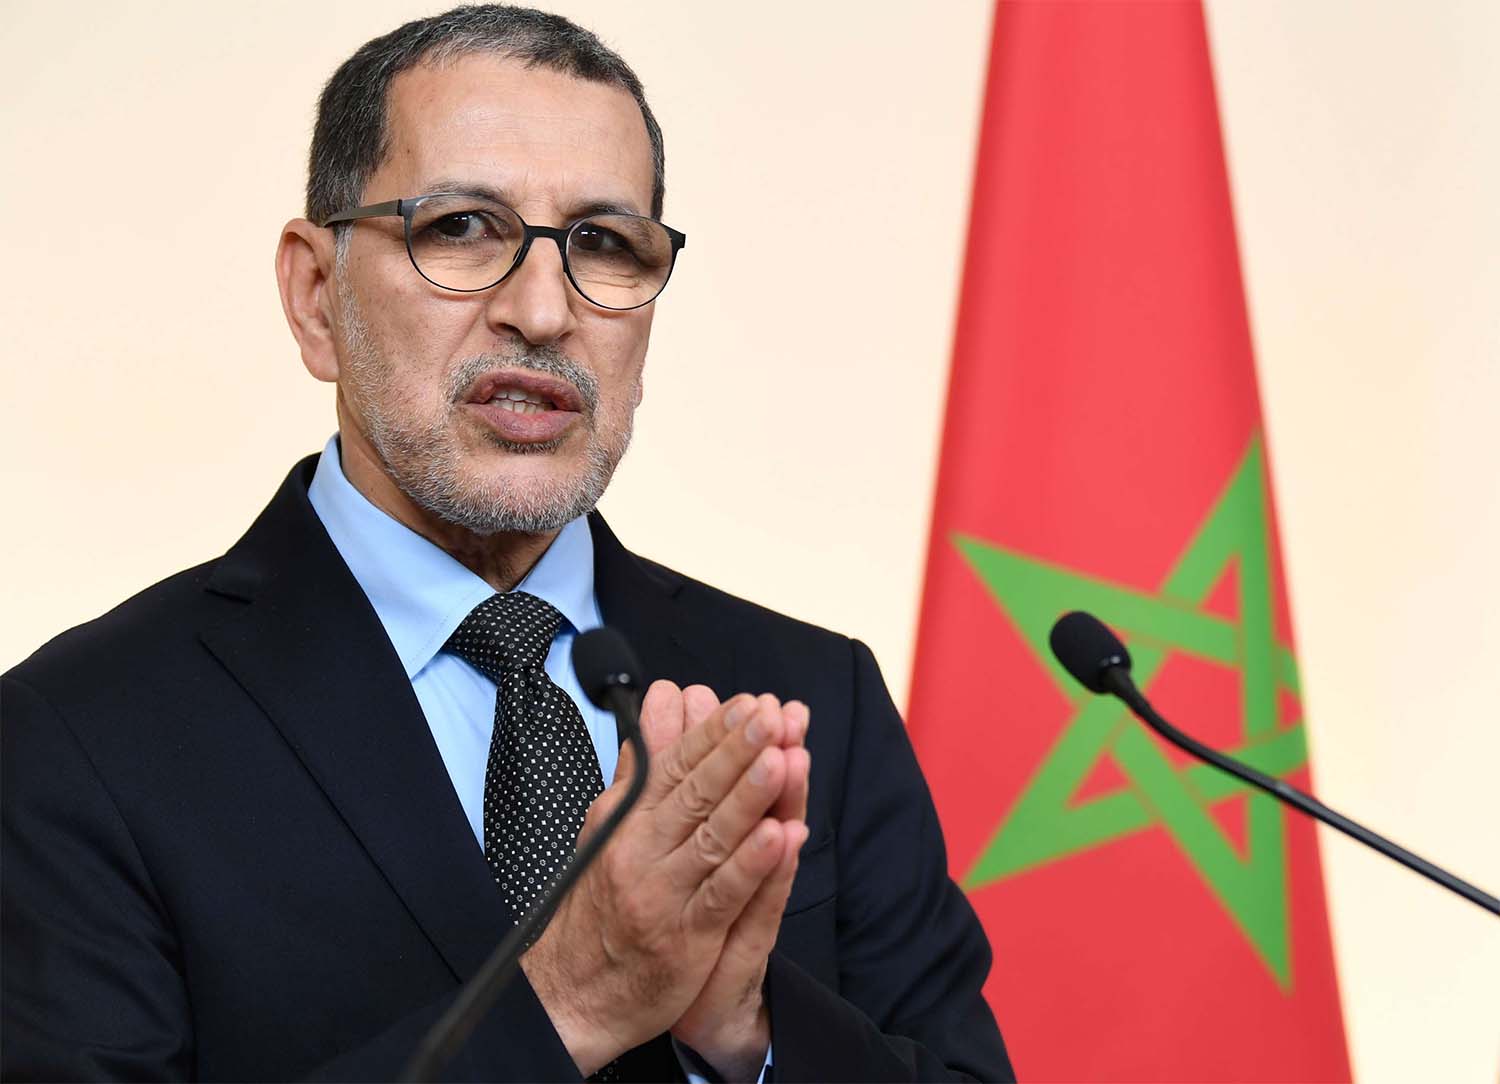 Morocco's Prime Minister Saad dine El Otmani